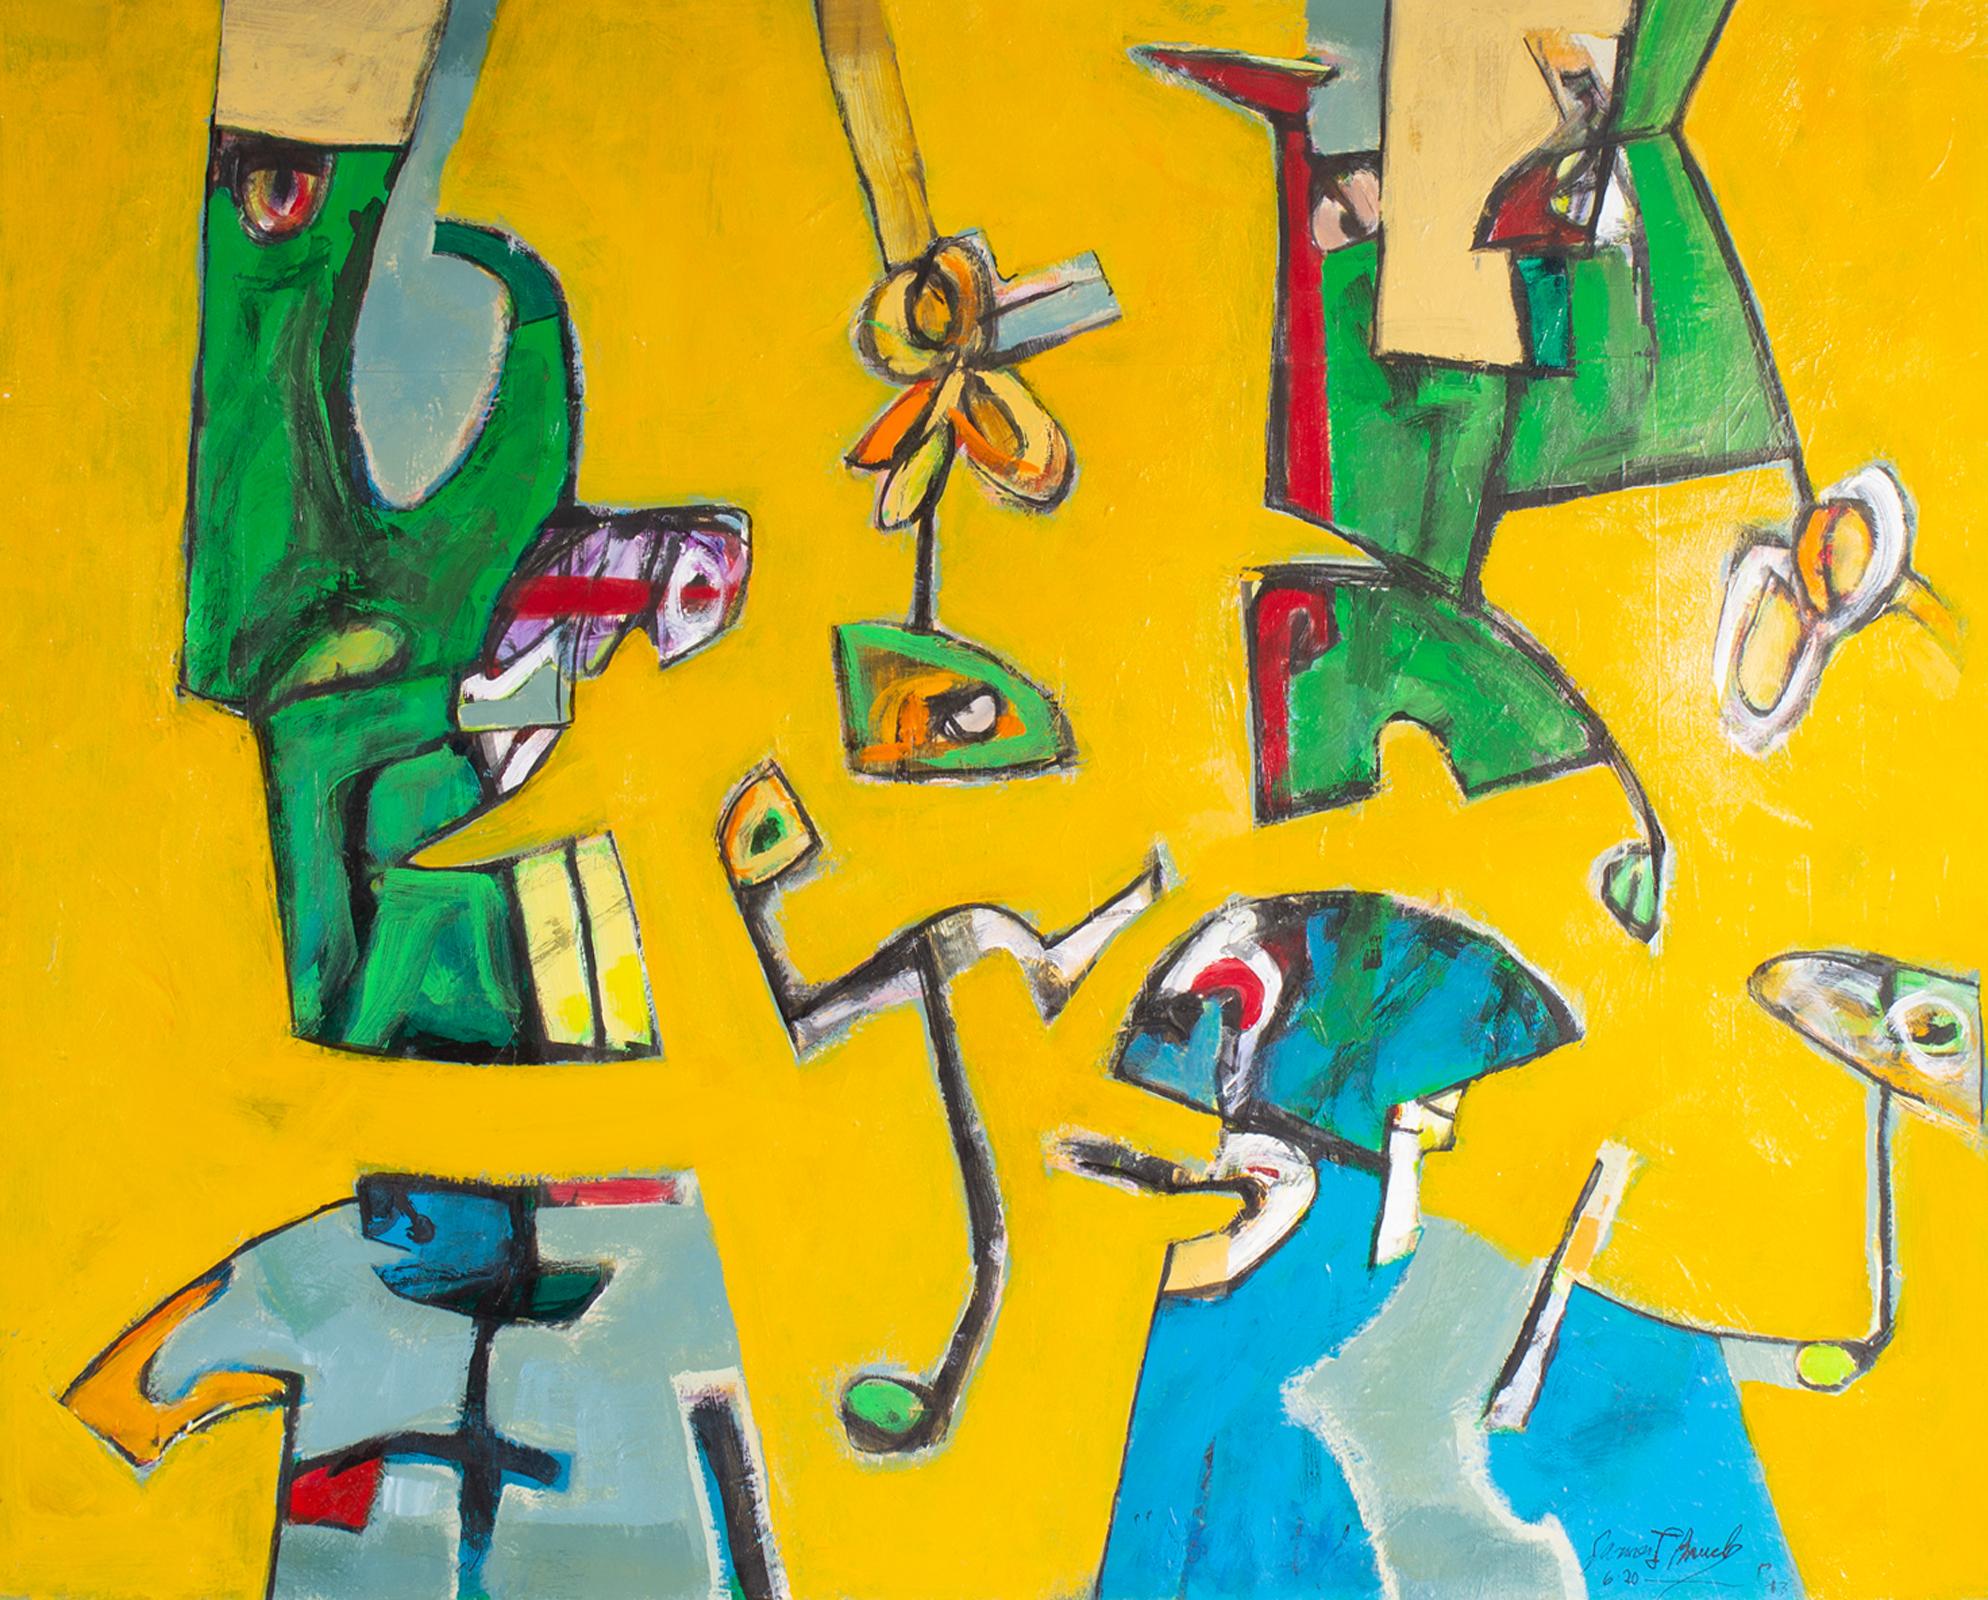 Ein Gemälde des amerikanischen Künstlers James L. Bruch (1942-2023) aus dem Jahr 2013, Acryl auf Papier. Ein leuchtend gelber Hintergrund wird in diesem farbenfrohen abstrakten Gemälde von lebhaften biomorphen blauen, grünen, roten und grauen Formen